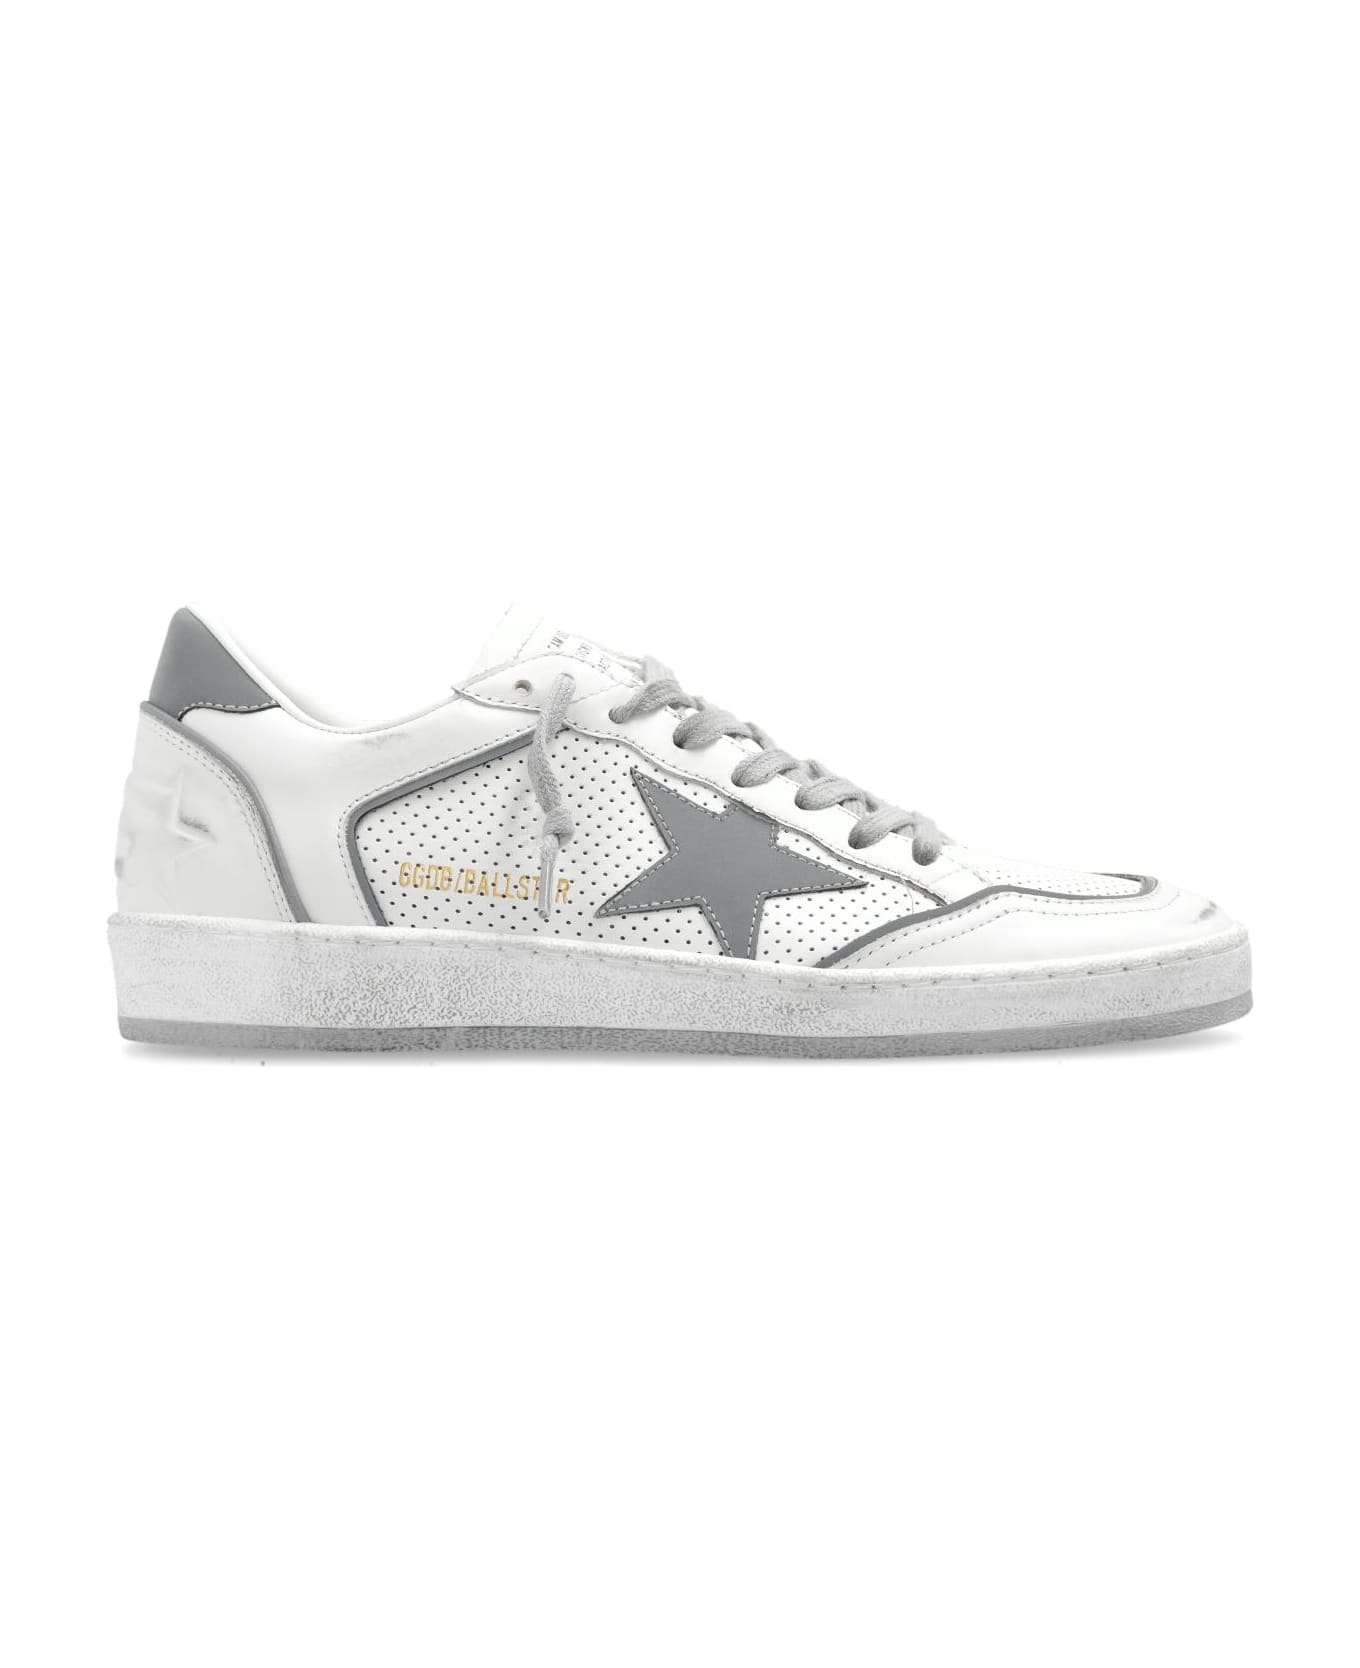 Golden Goose 'ball Star Double Quarter' Sneakers - White/silver スニーカー